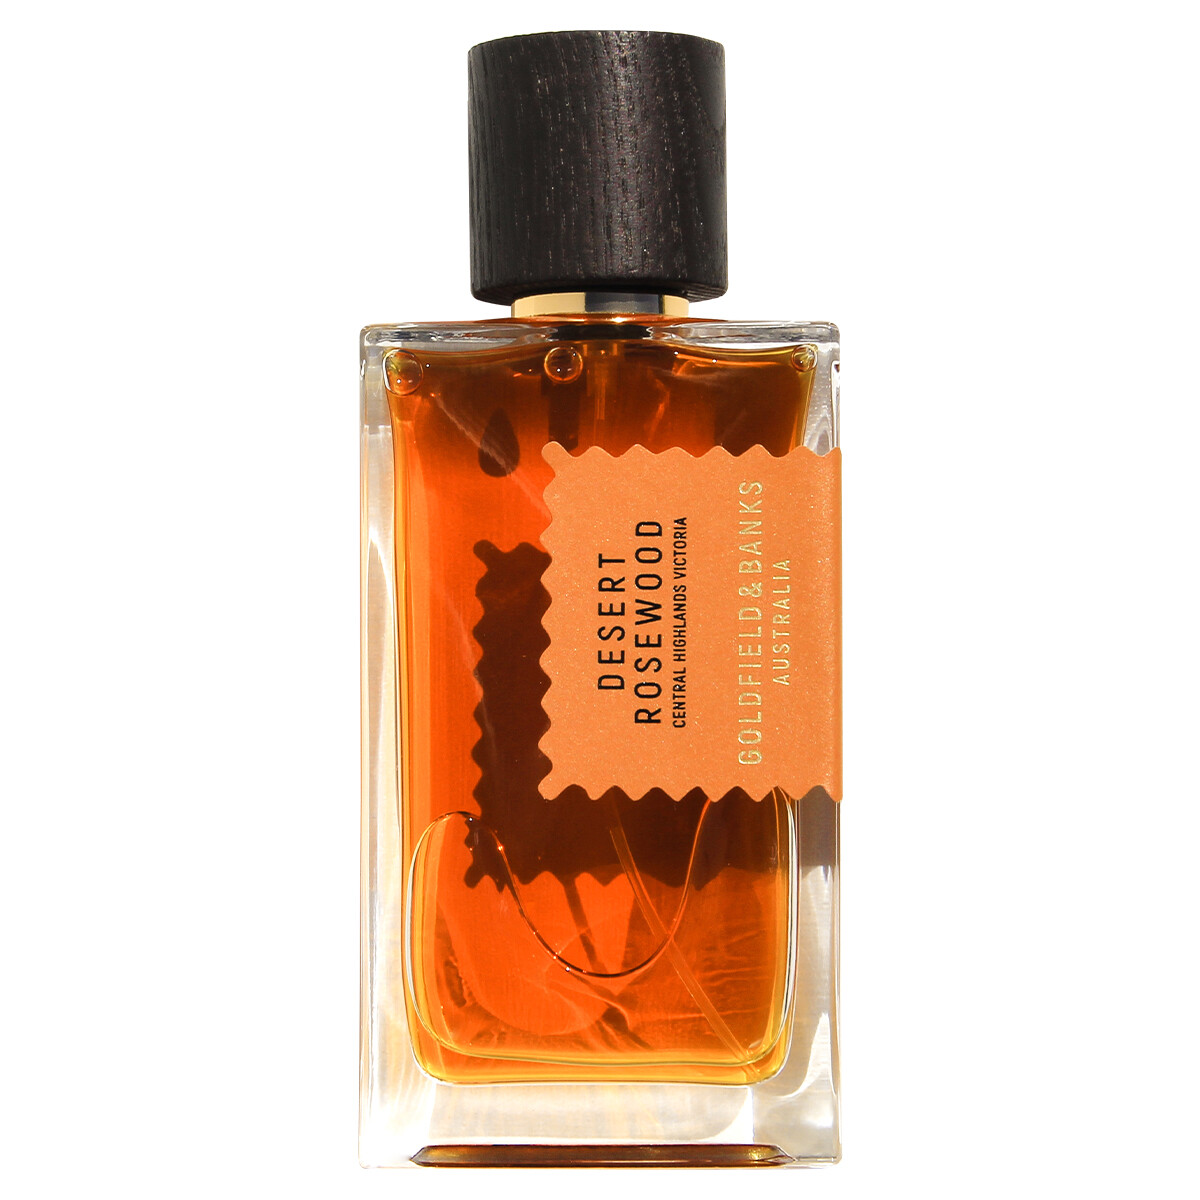 Luxus Parfum Goldfield und Banks Desert Rosewood Parfum 100ml kaufen